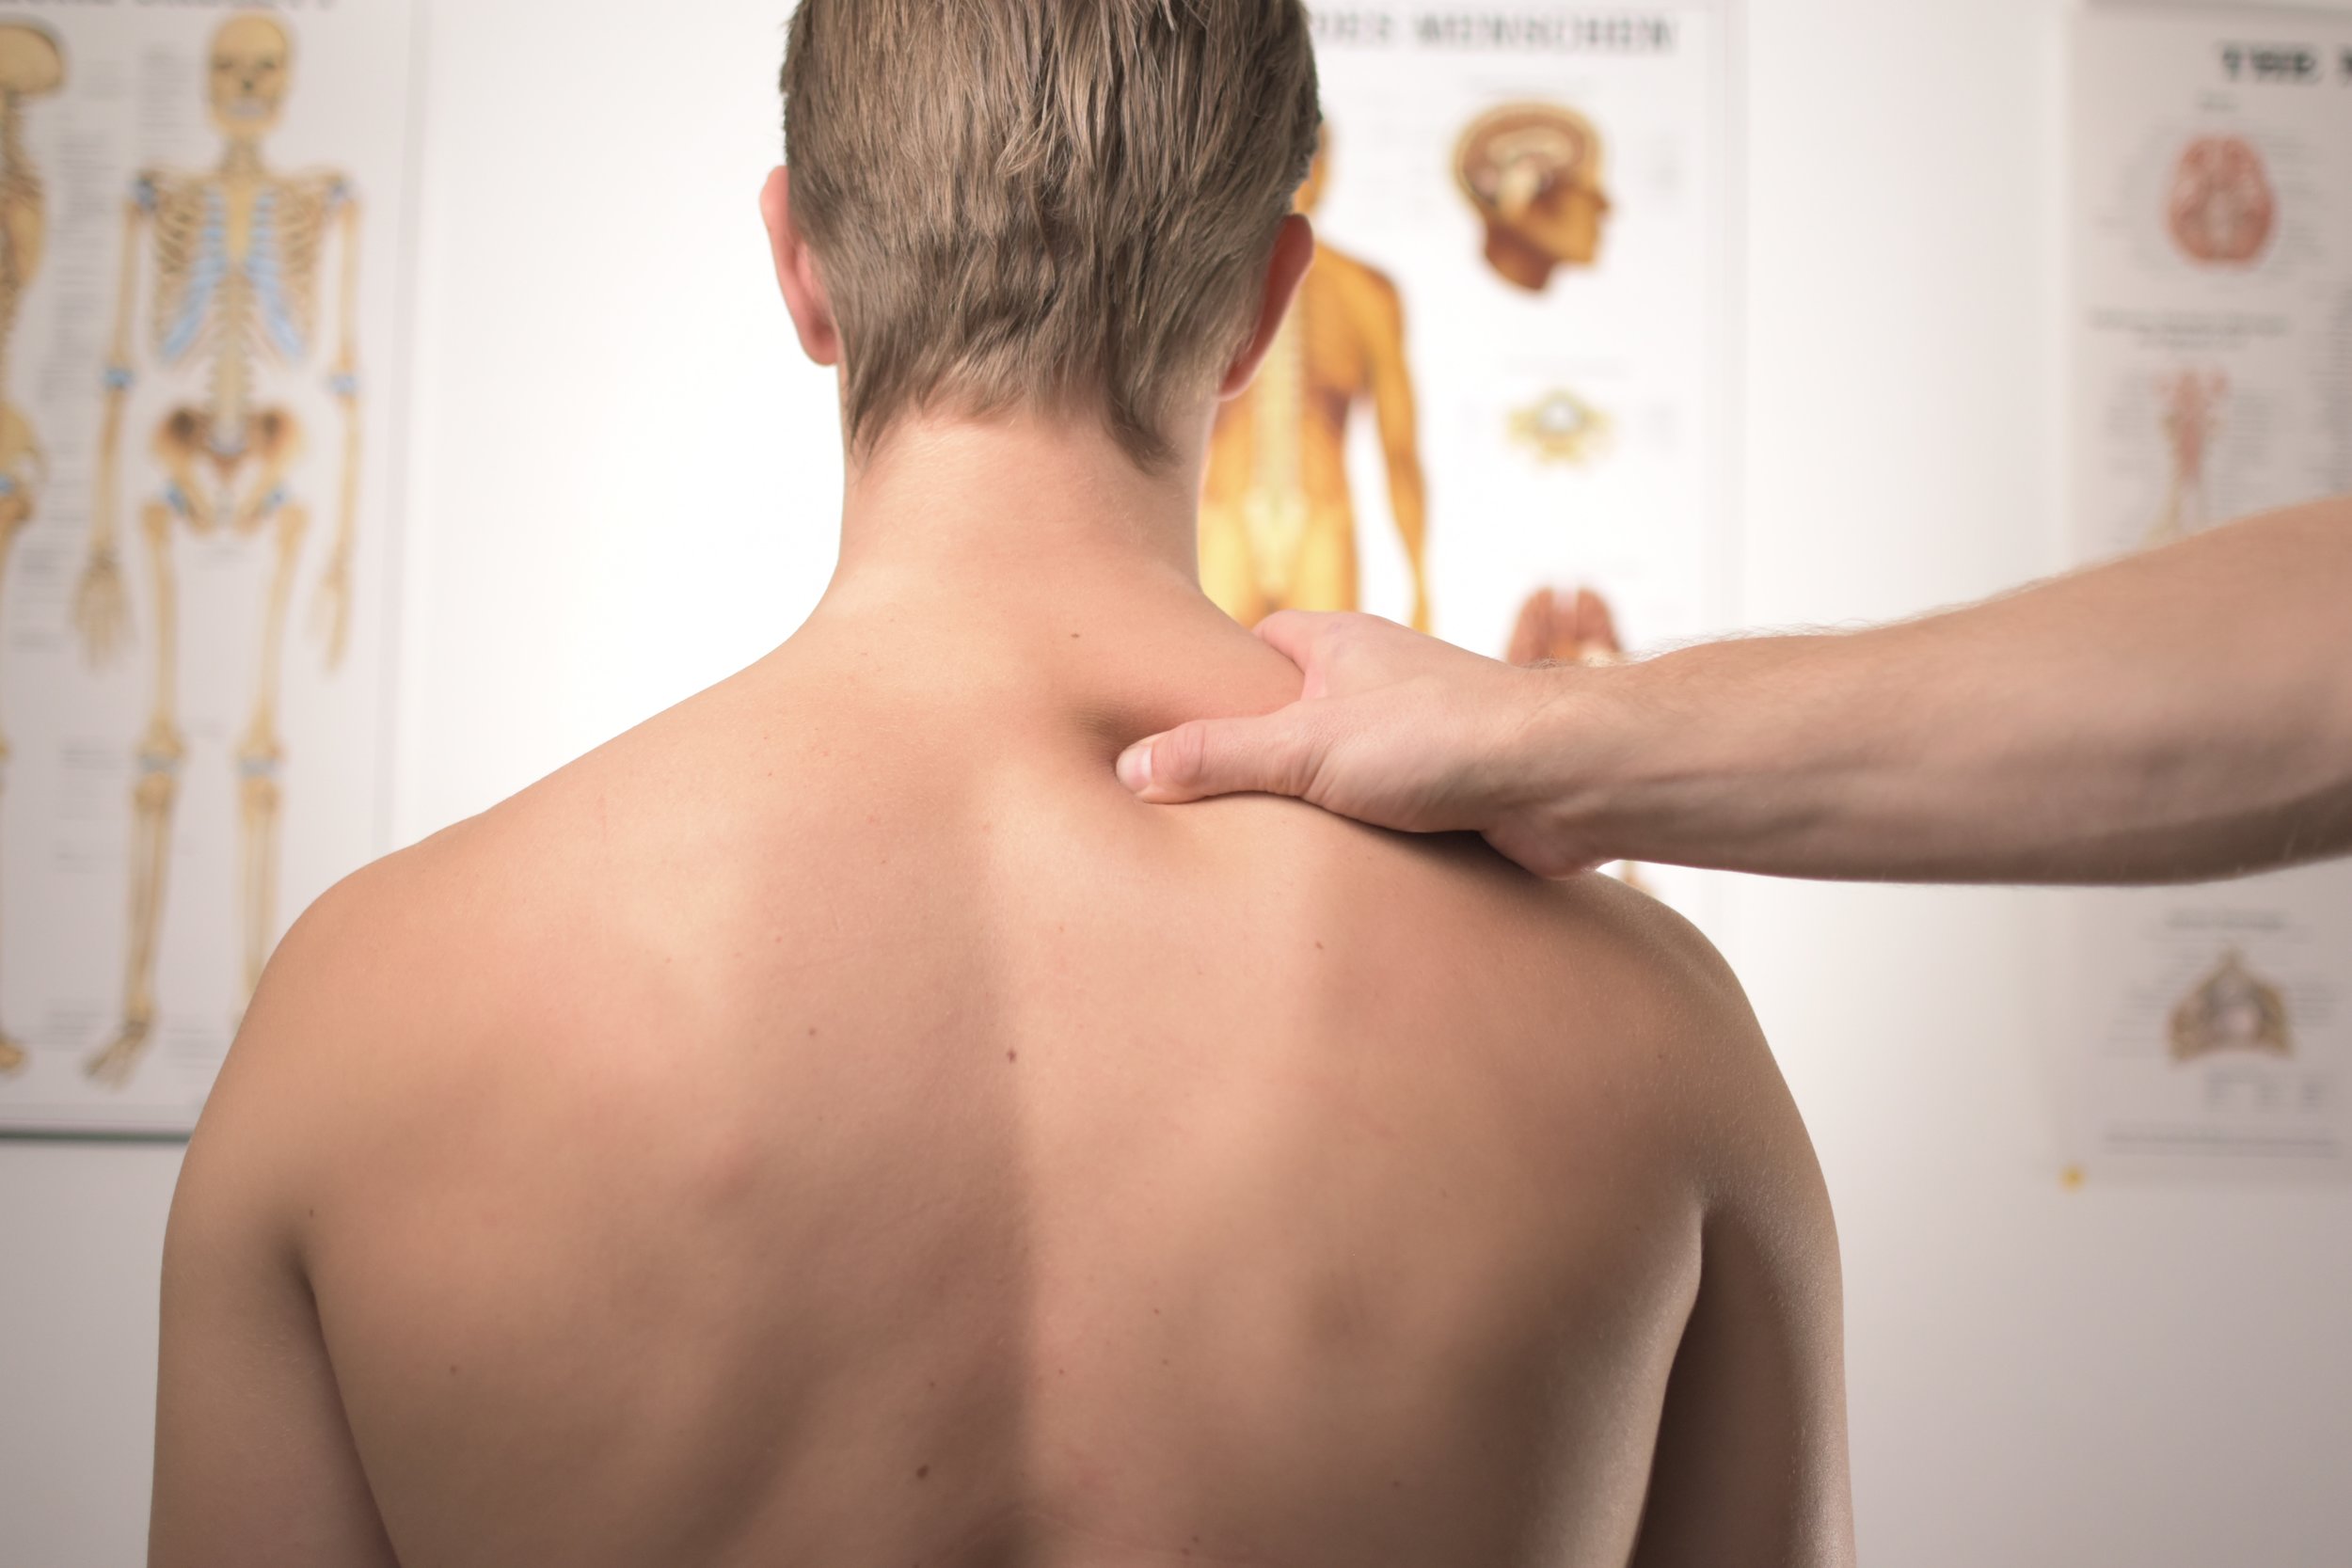 Neck Massage Techniques